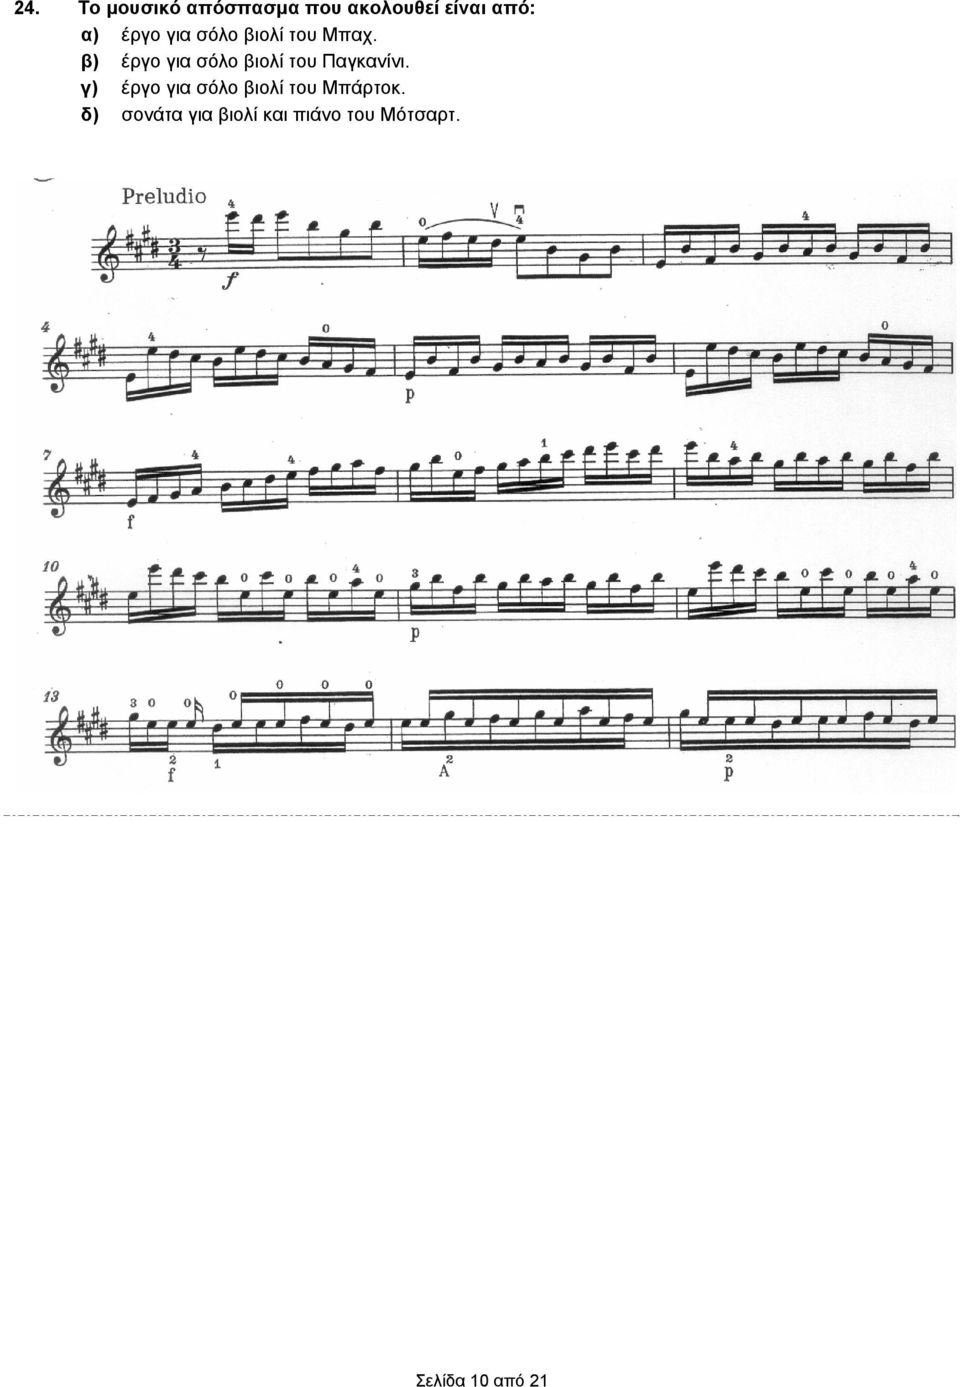 β) έργο για σόλο βιολί του Παγκανίνι.